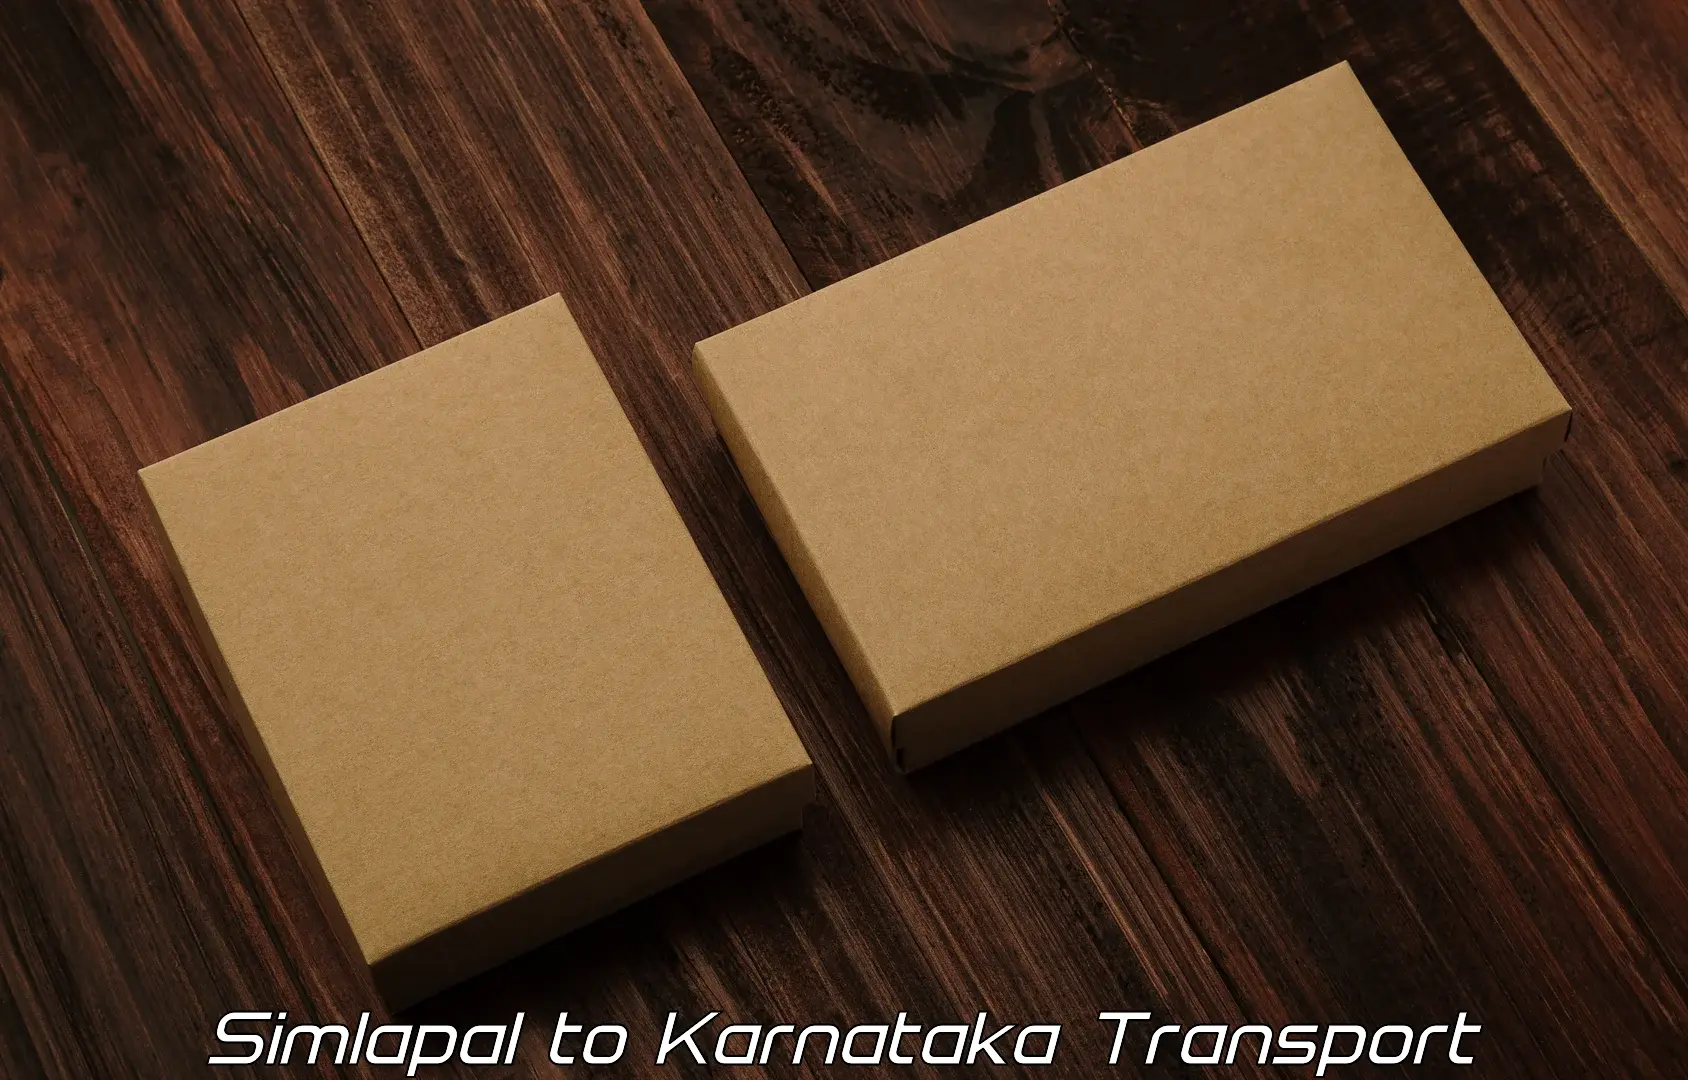 Transport shared services Simlapal to Krishnarajanagara